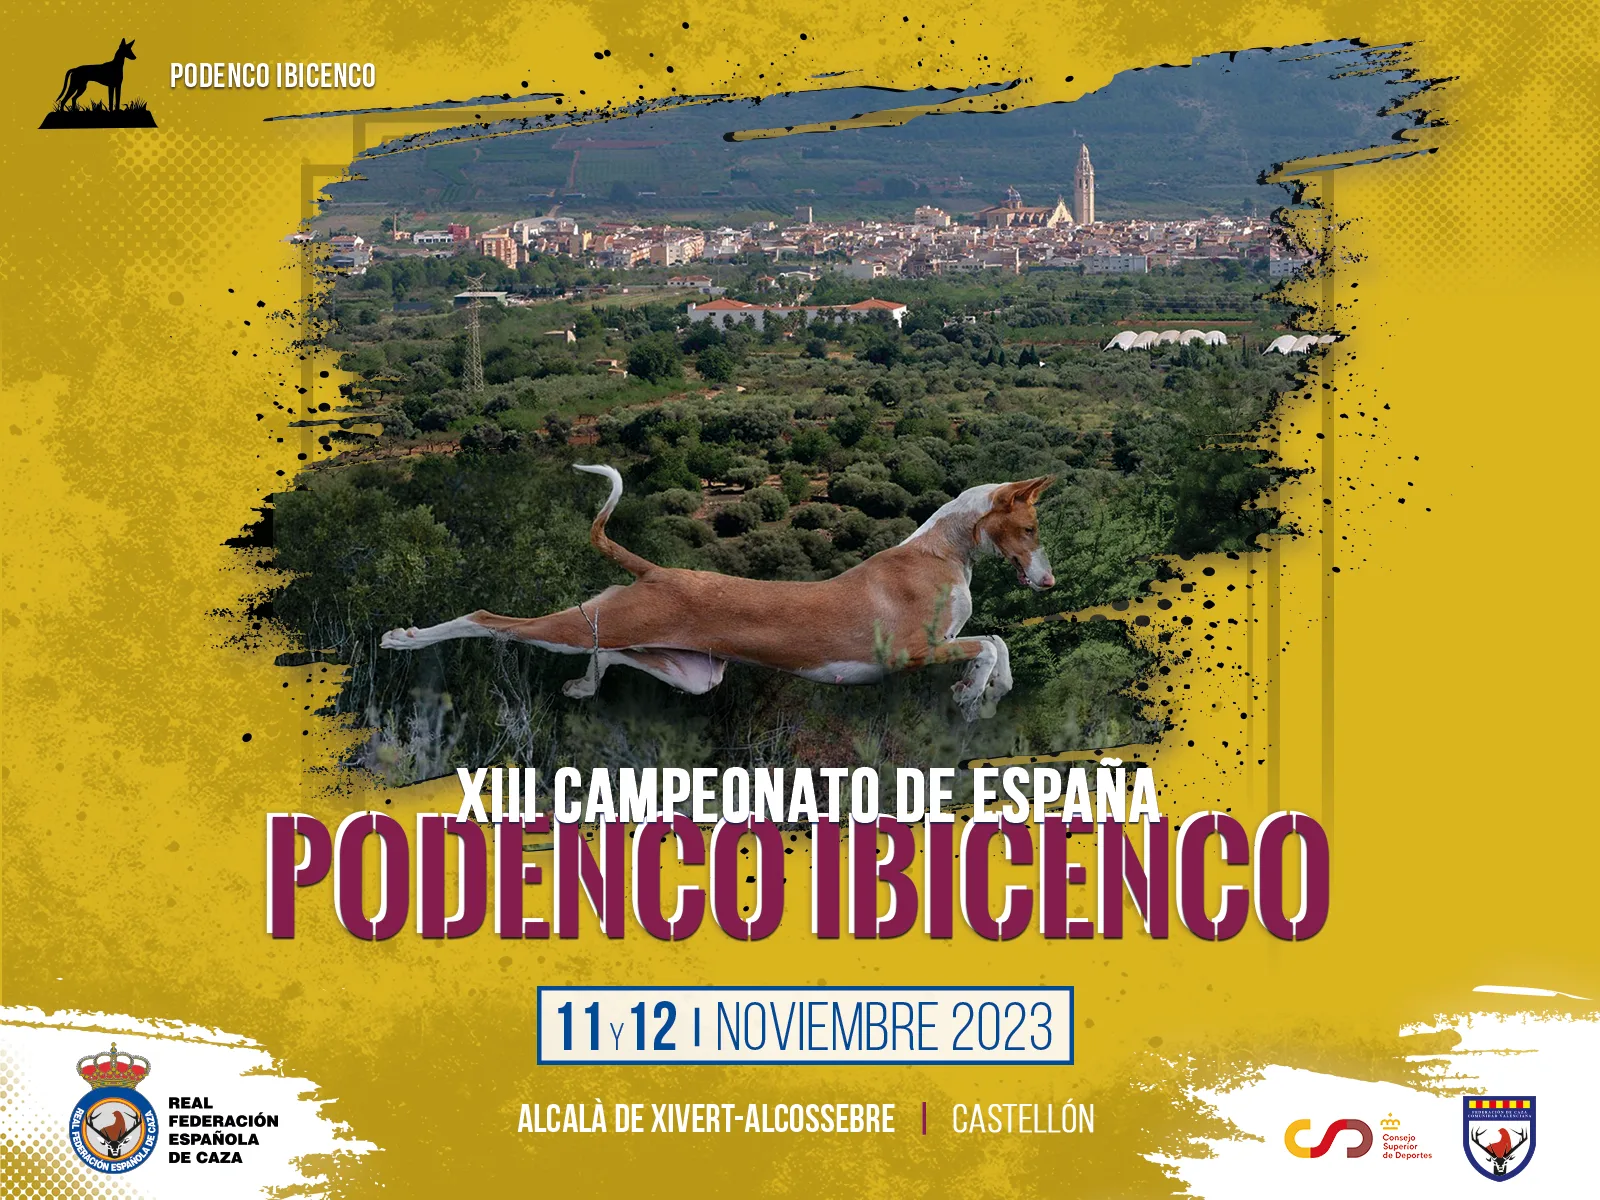 El XIII Campeonato de España de Podenco Ibicenco viaja hasta Castellón los días 11 y 12 de noviembre